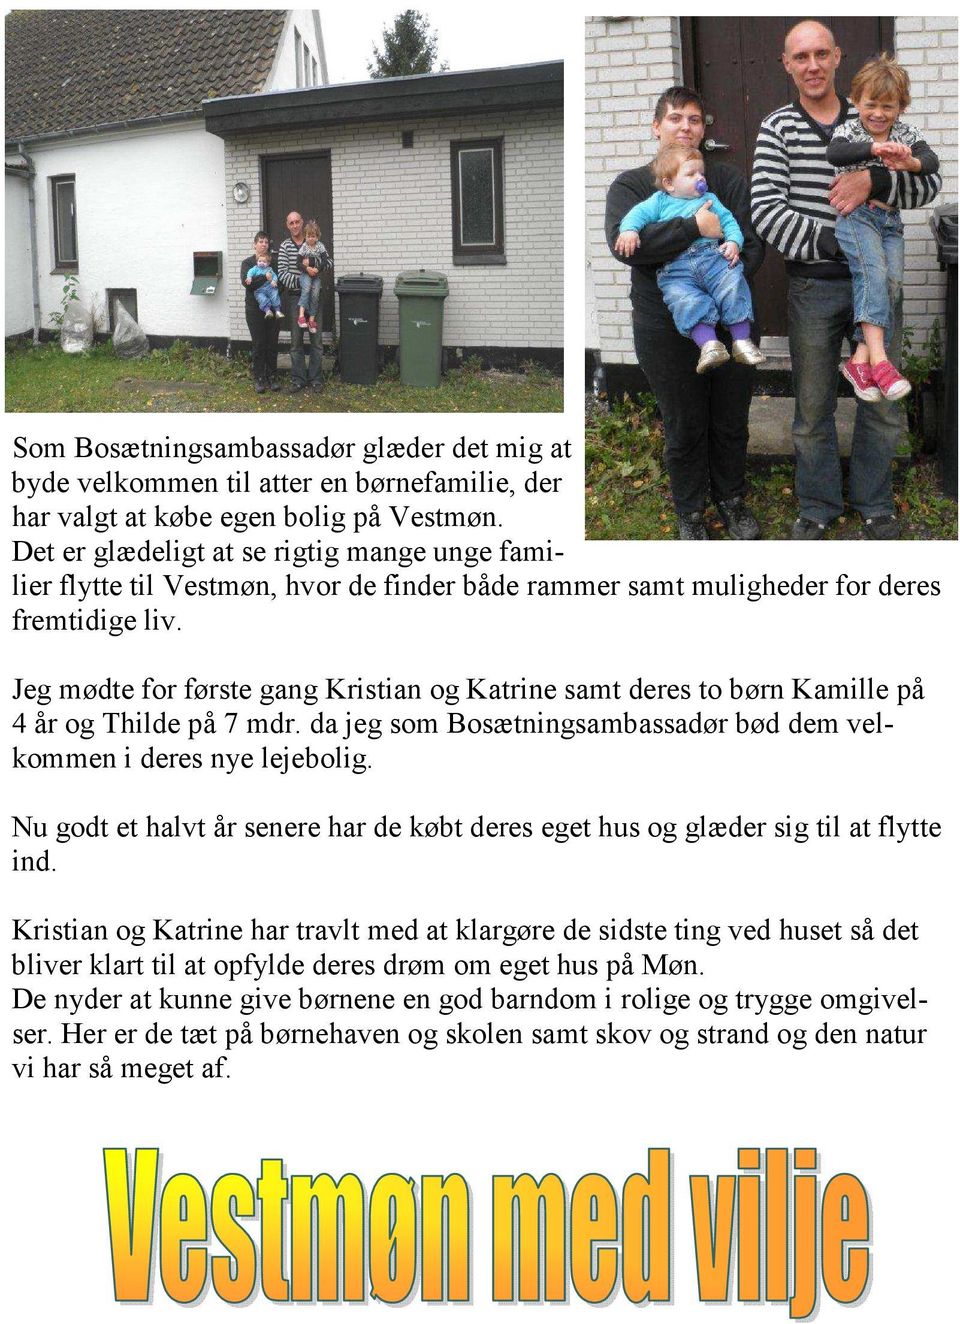 Jeg mødte for første gang Kristian og Katrine samt deres to børn Kamille på 4 år og Thilde på 7 mdr. da jeg som Bosætningsambassadør bød dem velkommen i deres nye lejebolig.